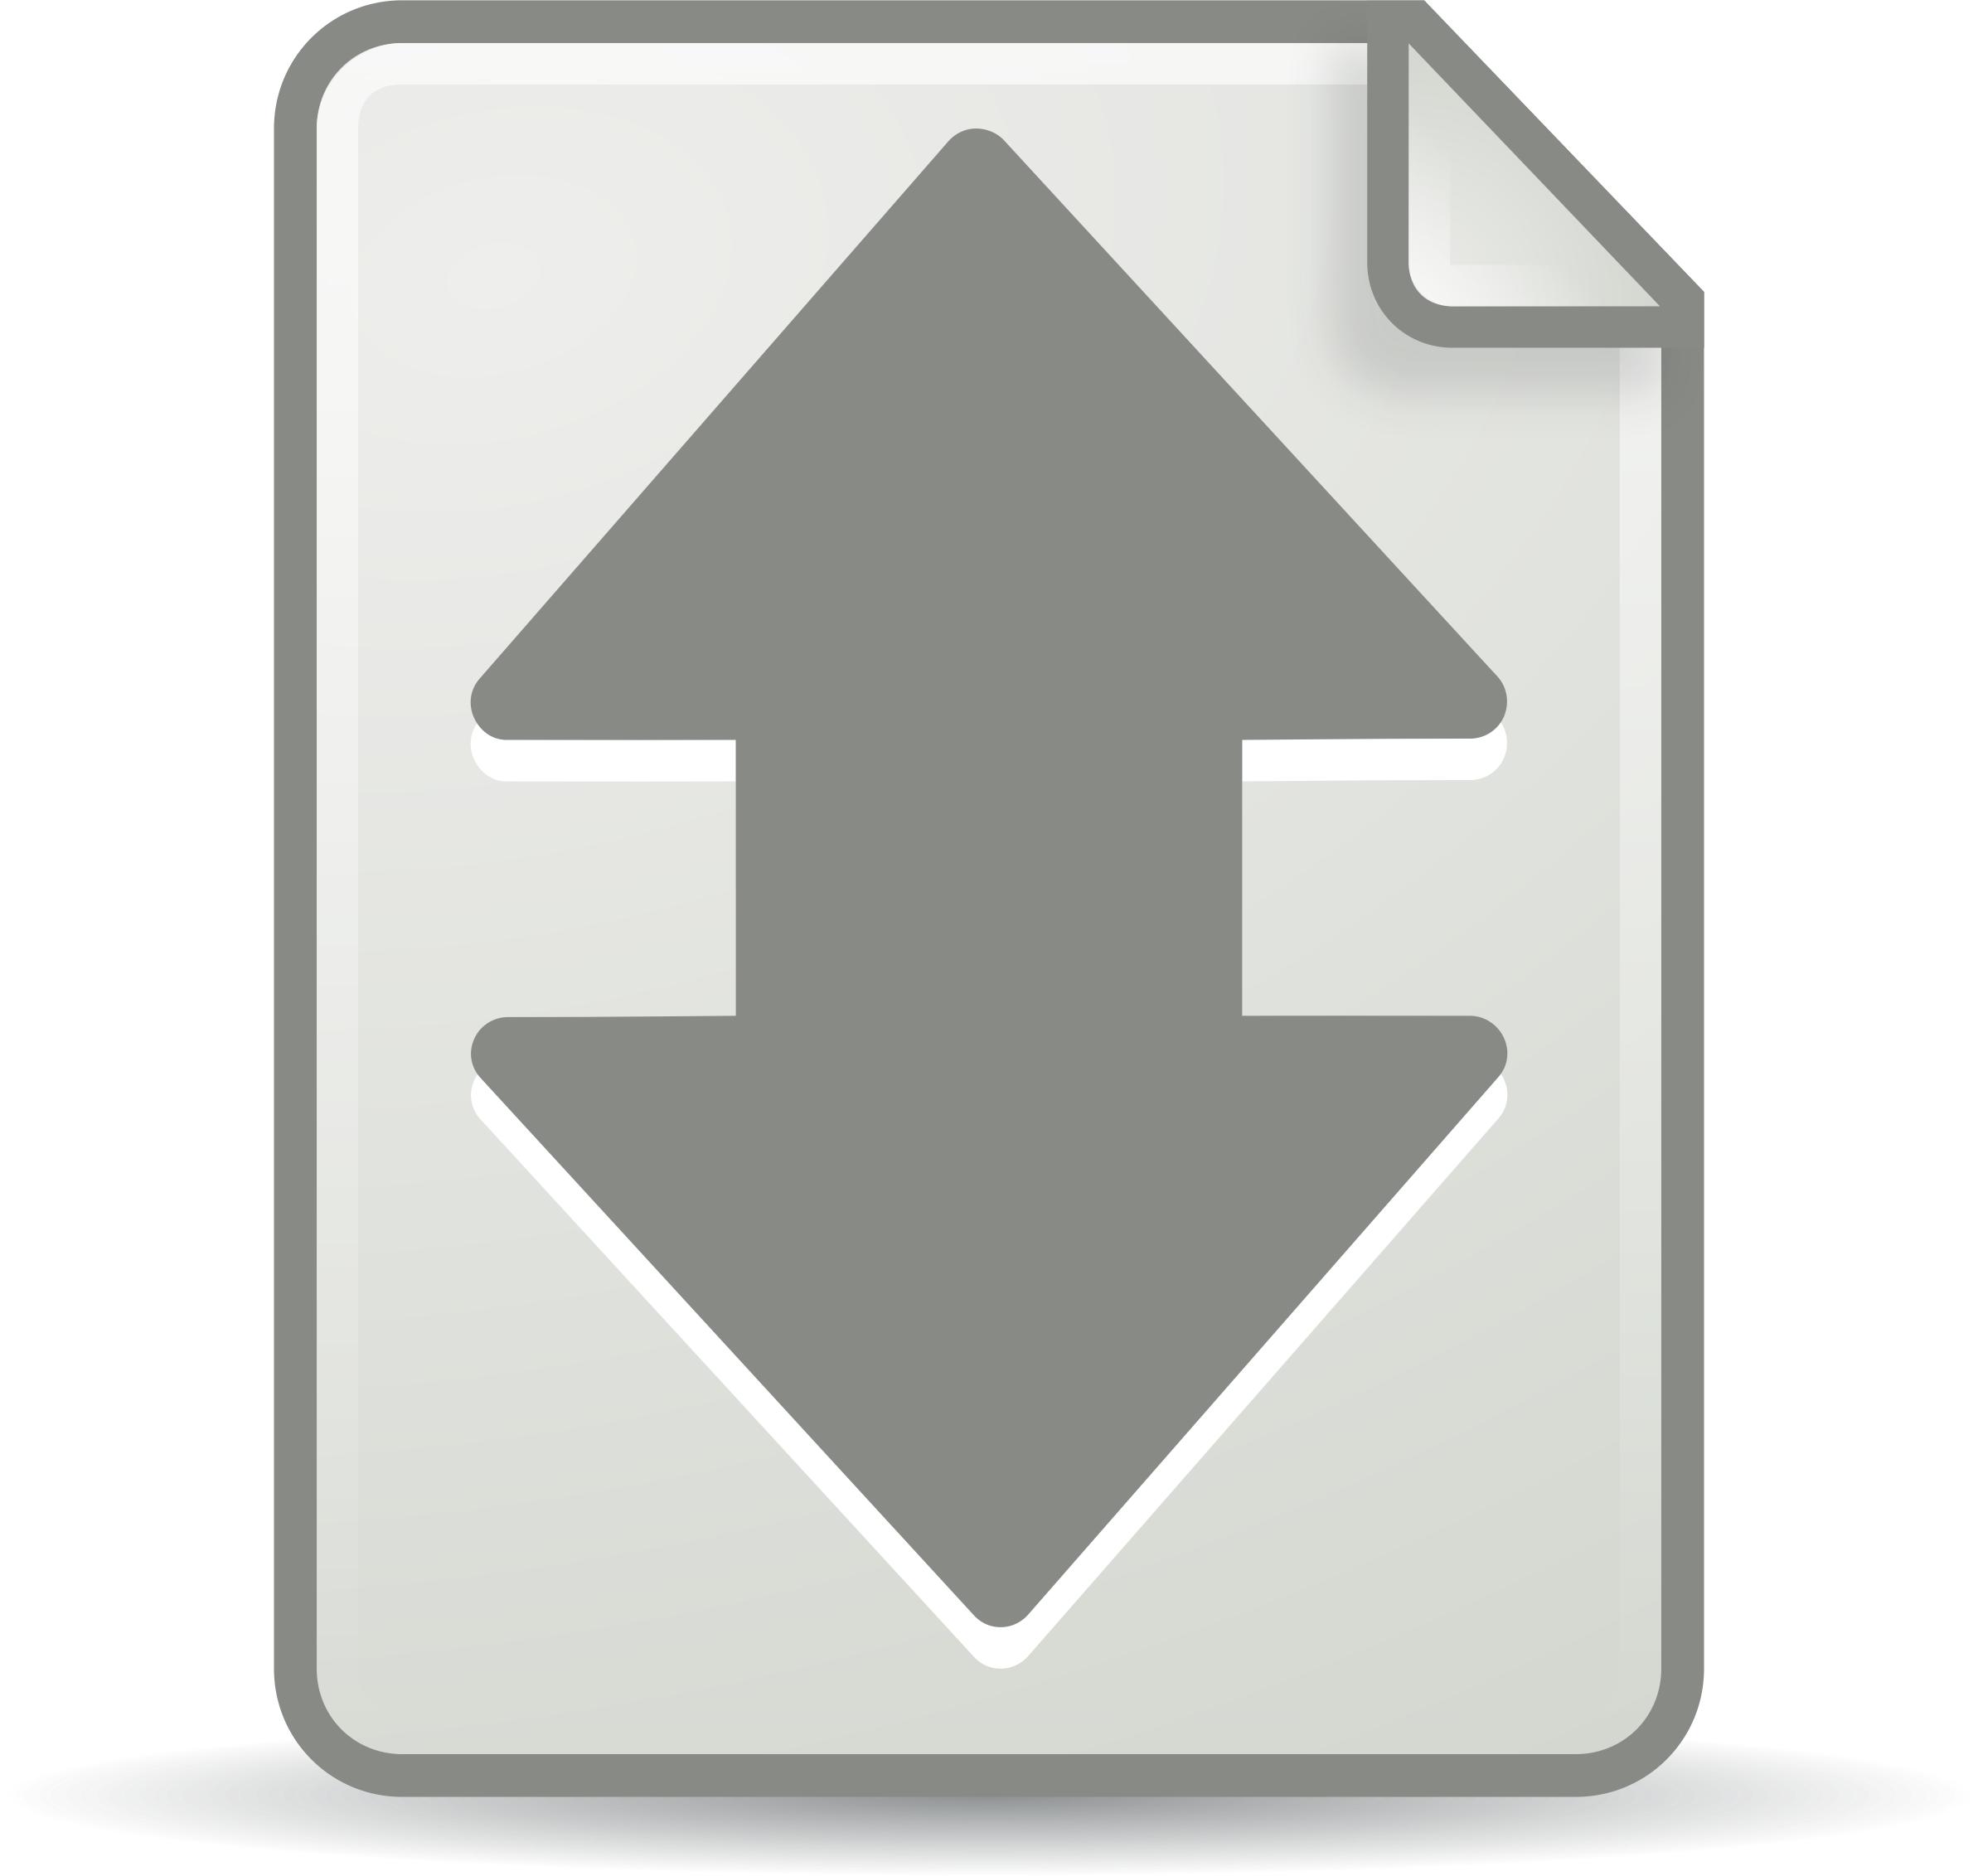 Bittorrent Torrent File icons